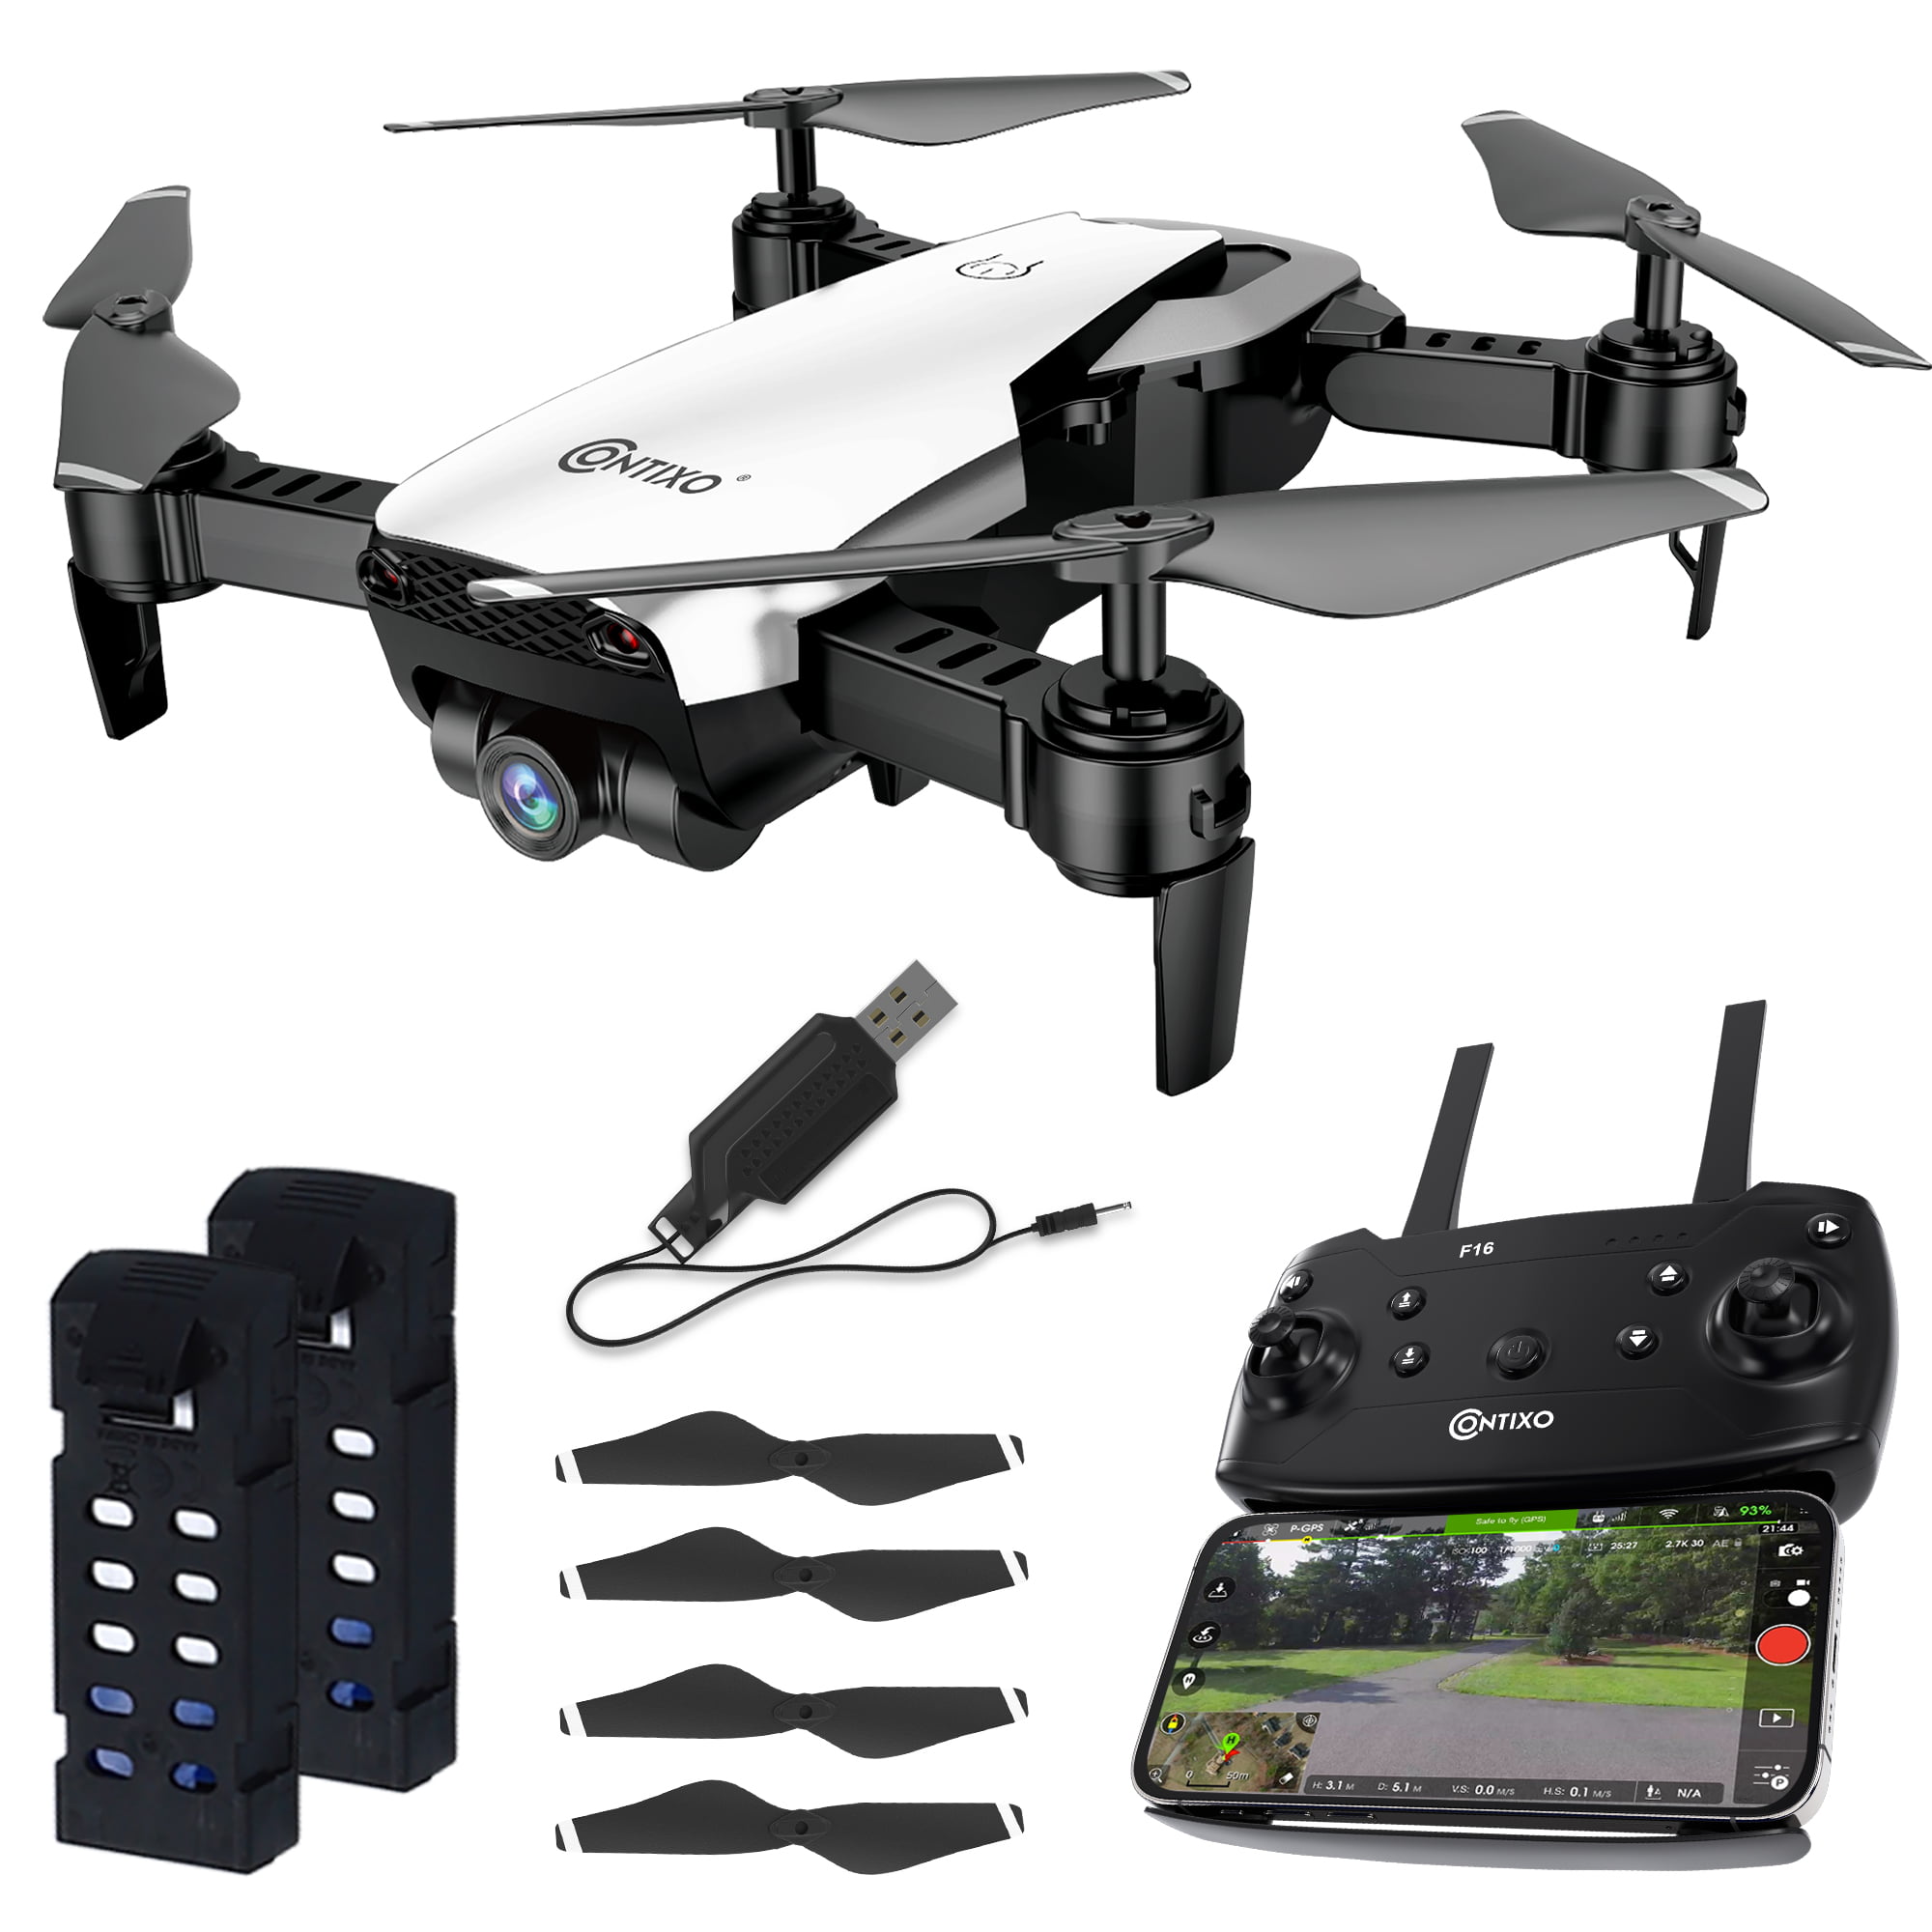 Contixo F16 Drone with 1080P HD Camera